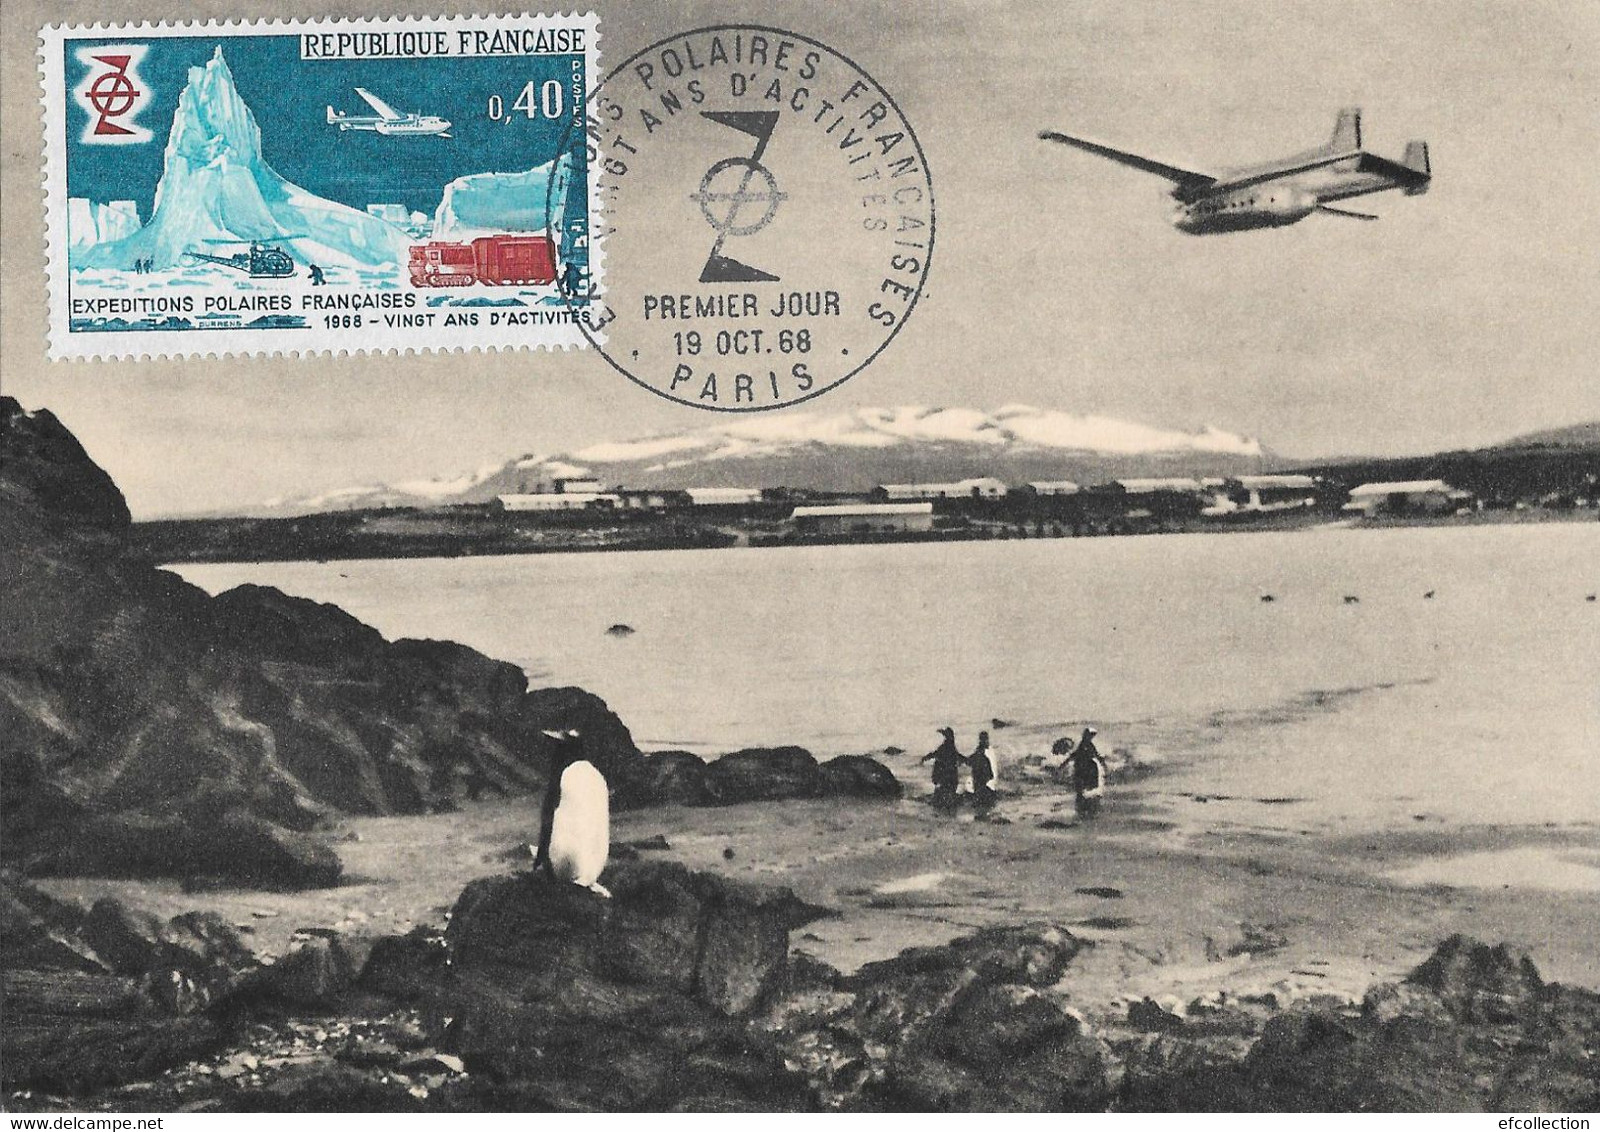 ILES KERGUELEN LA BASE SCIENTIFIQUE GRANDE TERRE PORT AUX FRANÇAIS AVIATION AVION EXPEDITIONS POLAIRES CARTE TIMBRE 1968 - TAAF : French Southern And Antarctic Lands